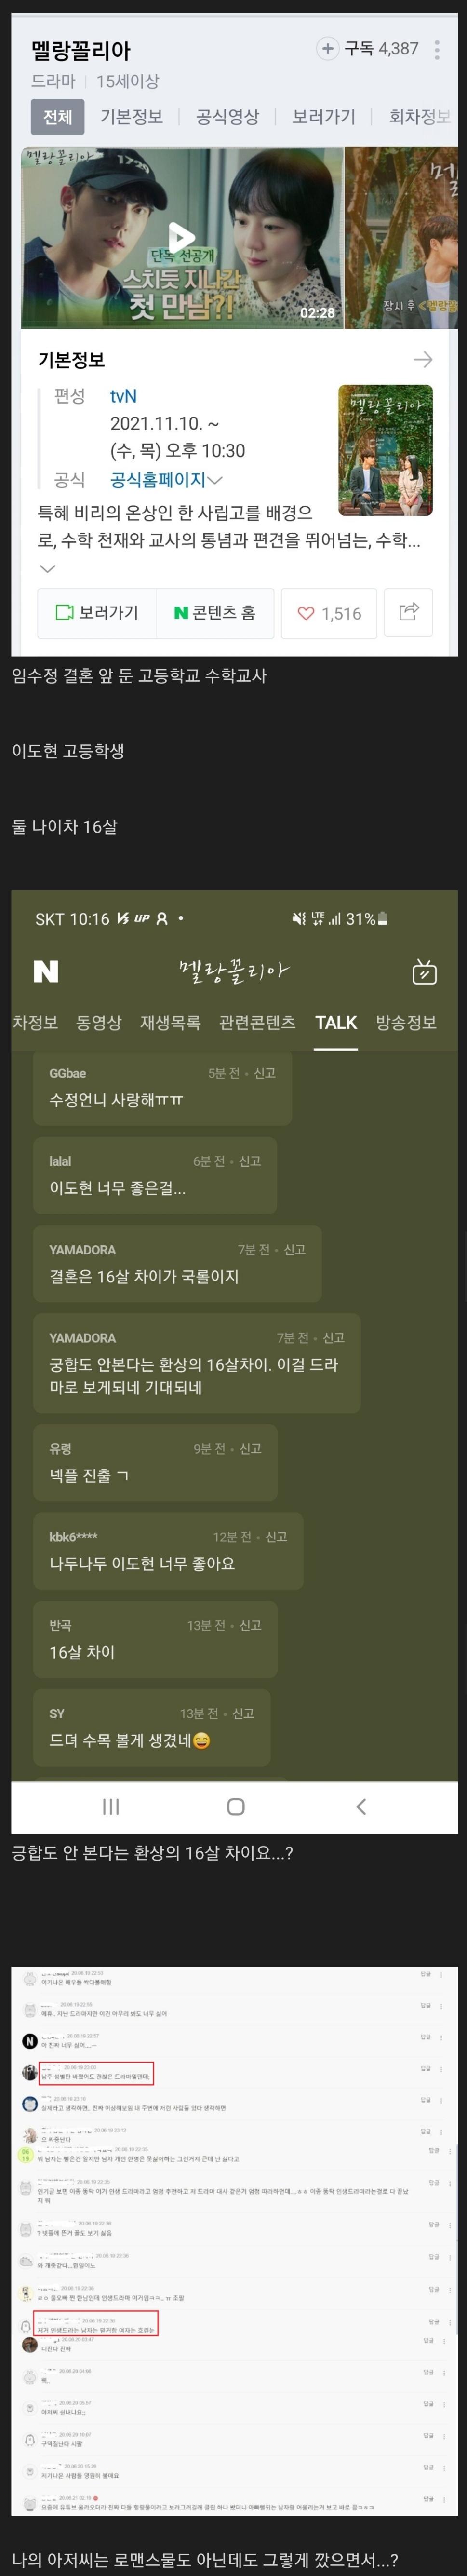 tvn 새 드라마 여초 반응들